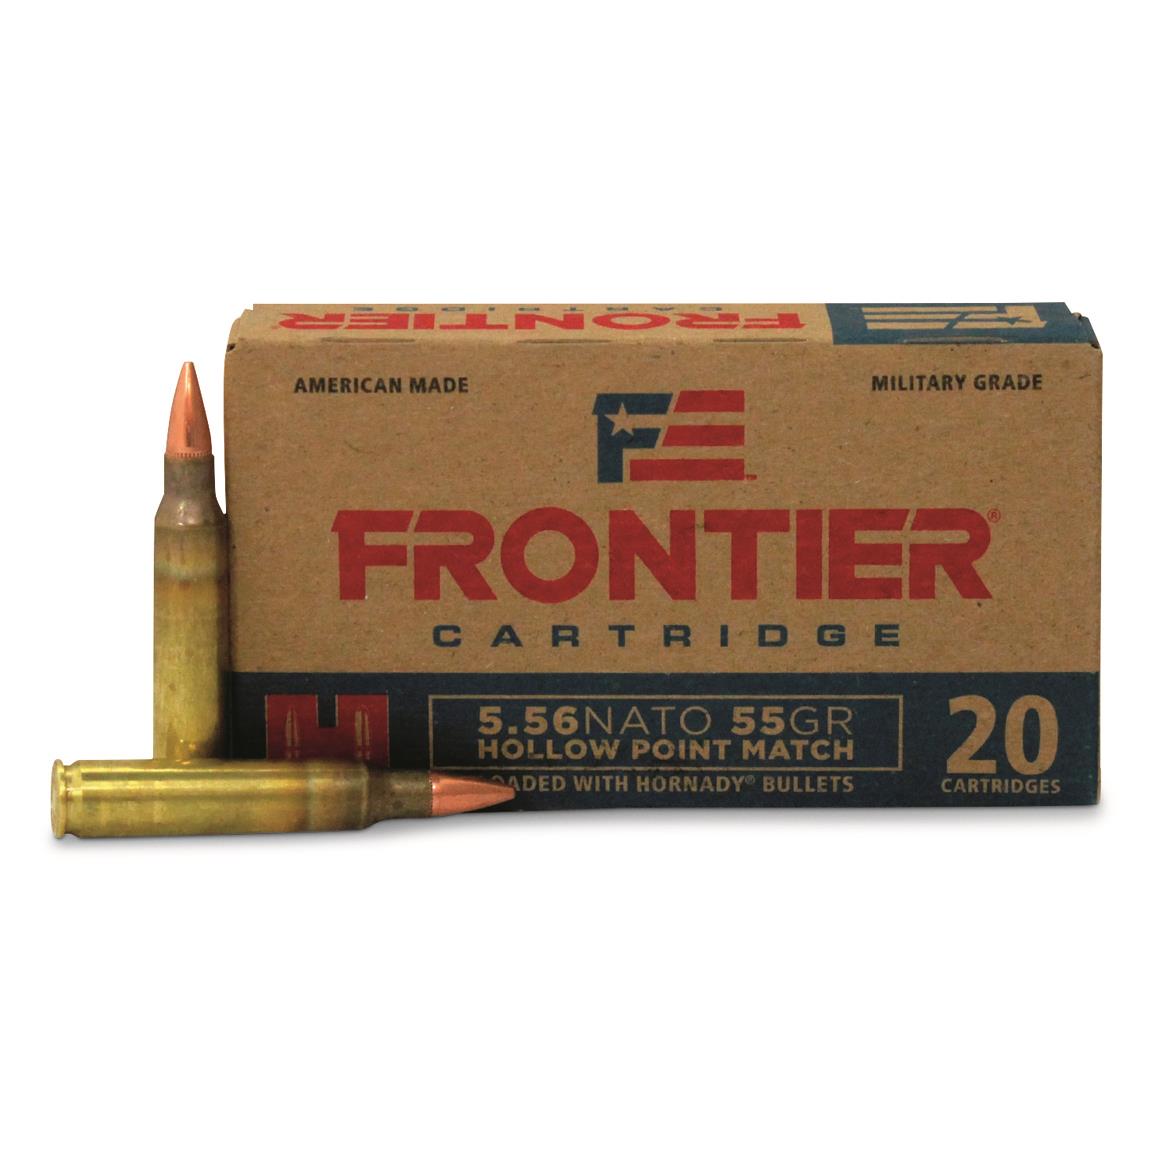 Hornady Frontier Cartridge, 5.56x45mm NATO, 55 Grain, HP Match, 20 Rounds